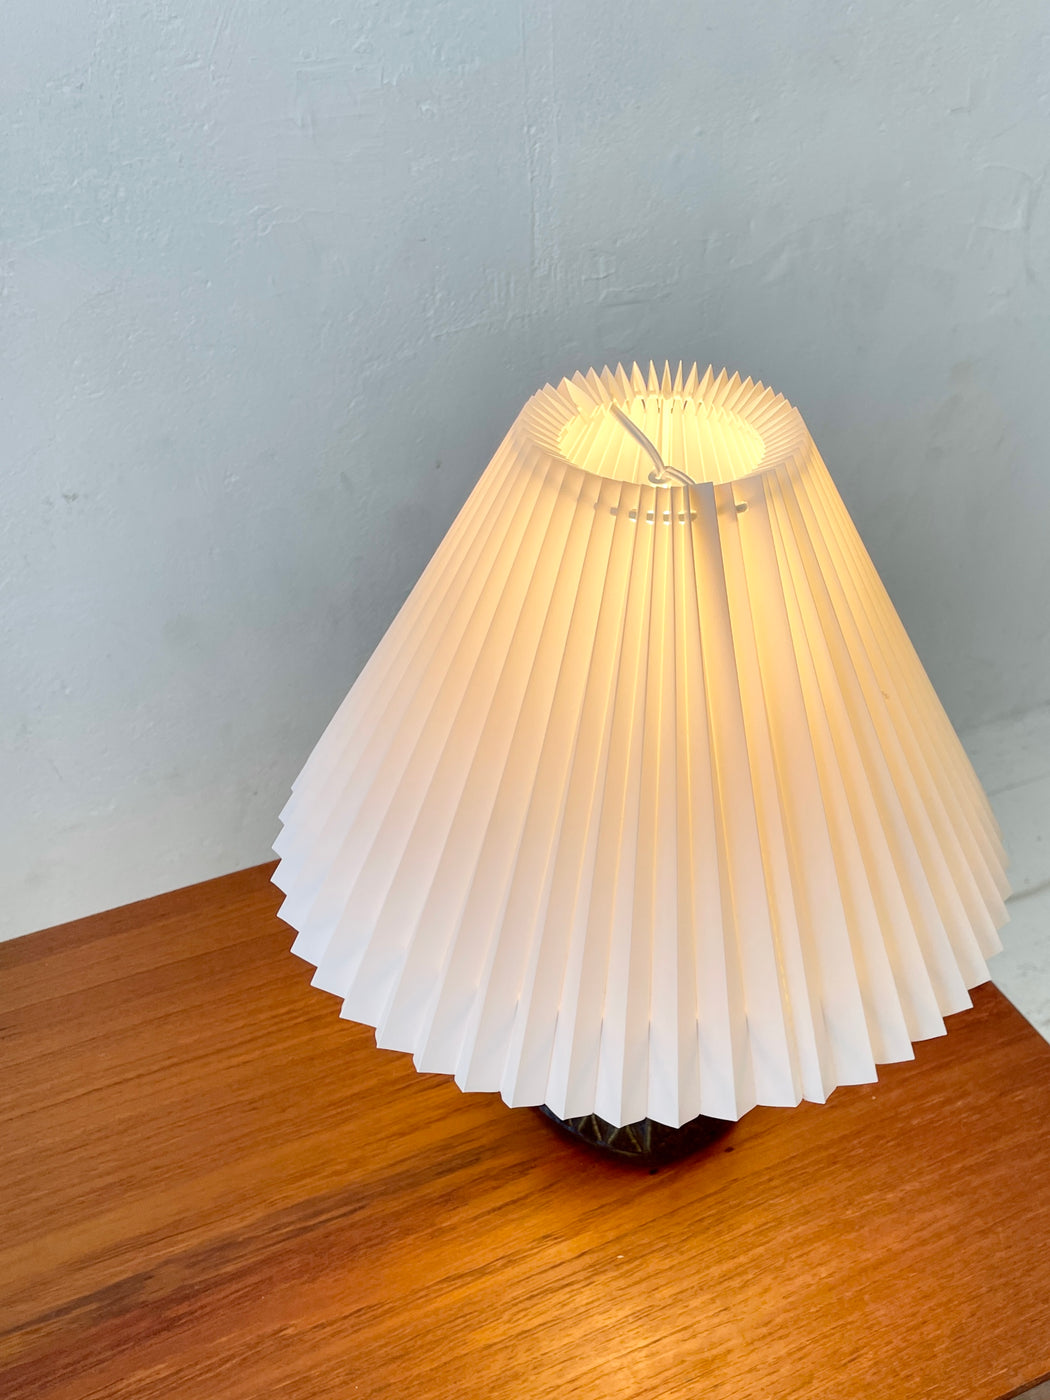 Einar Johansen Table Lamp